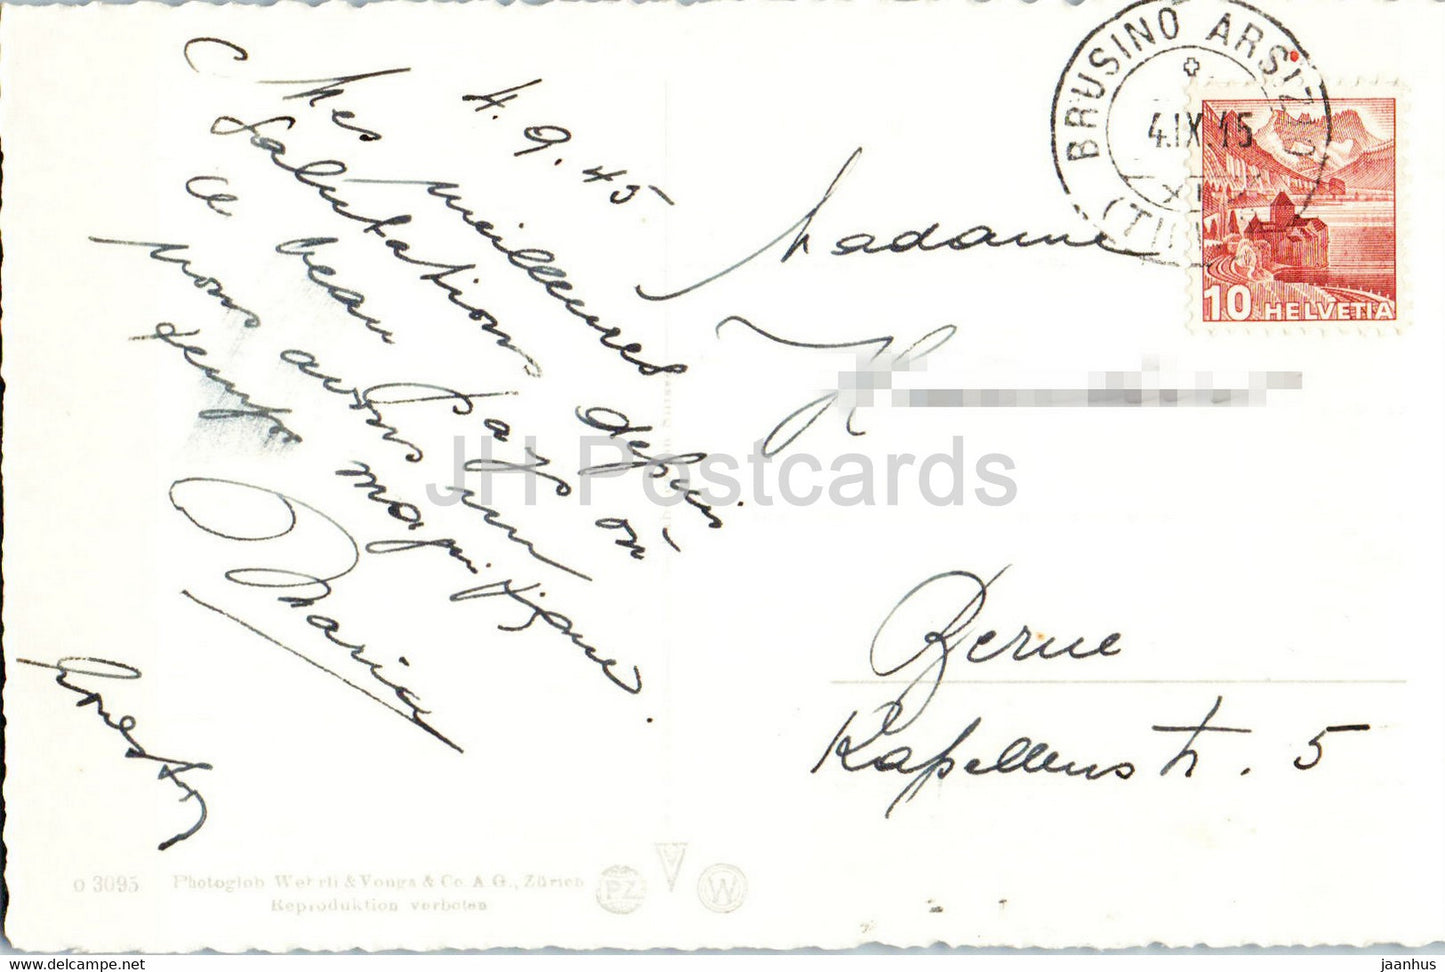 Morcote – 3095 – 1945 – alte Postkarte – Schweiz – gebraucht